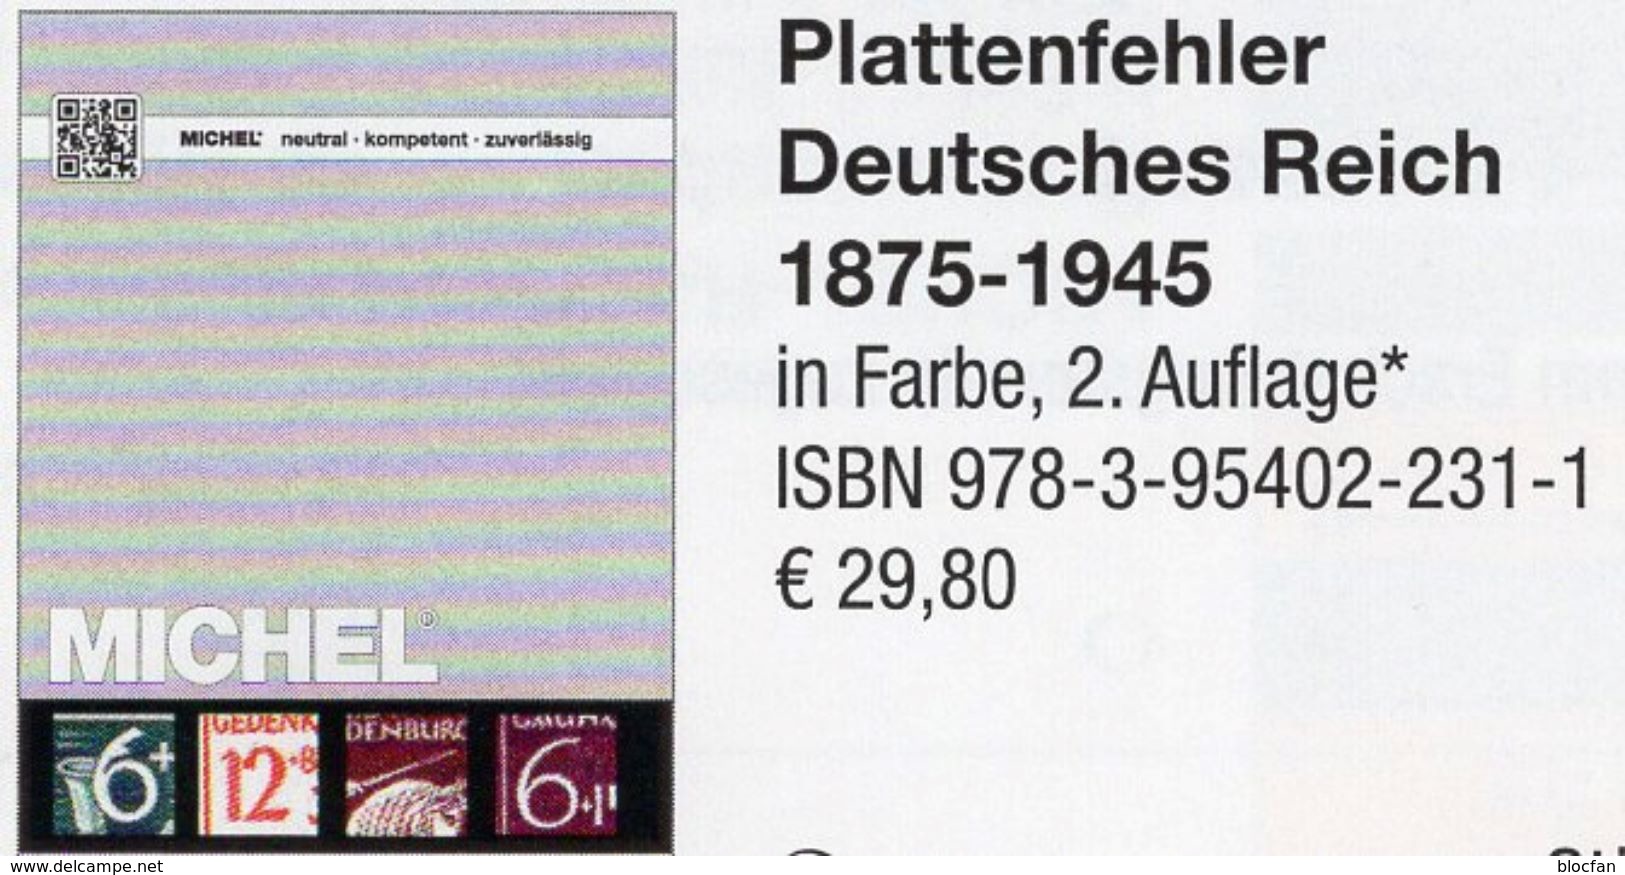 Deutsche Reich 1875-1945 MlCHEL Plattenfehler 2018 New 30€ D Kaiserreich DR 3.Reich Error Special Catalogue Germany - Philatélie